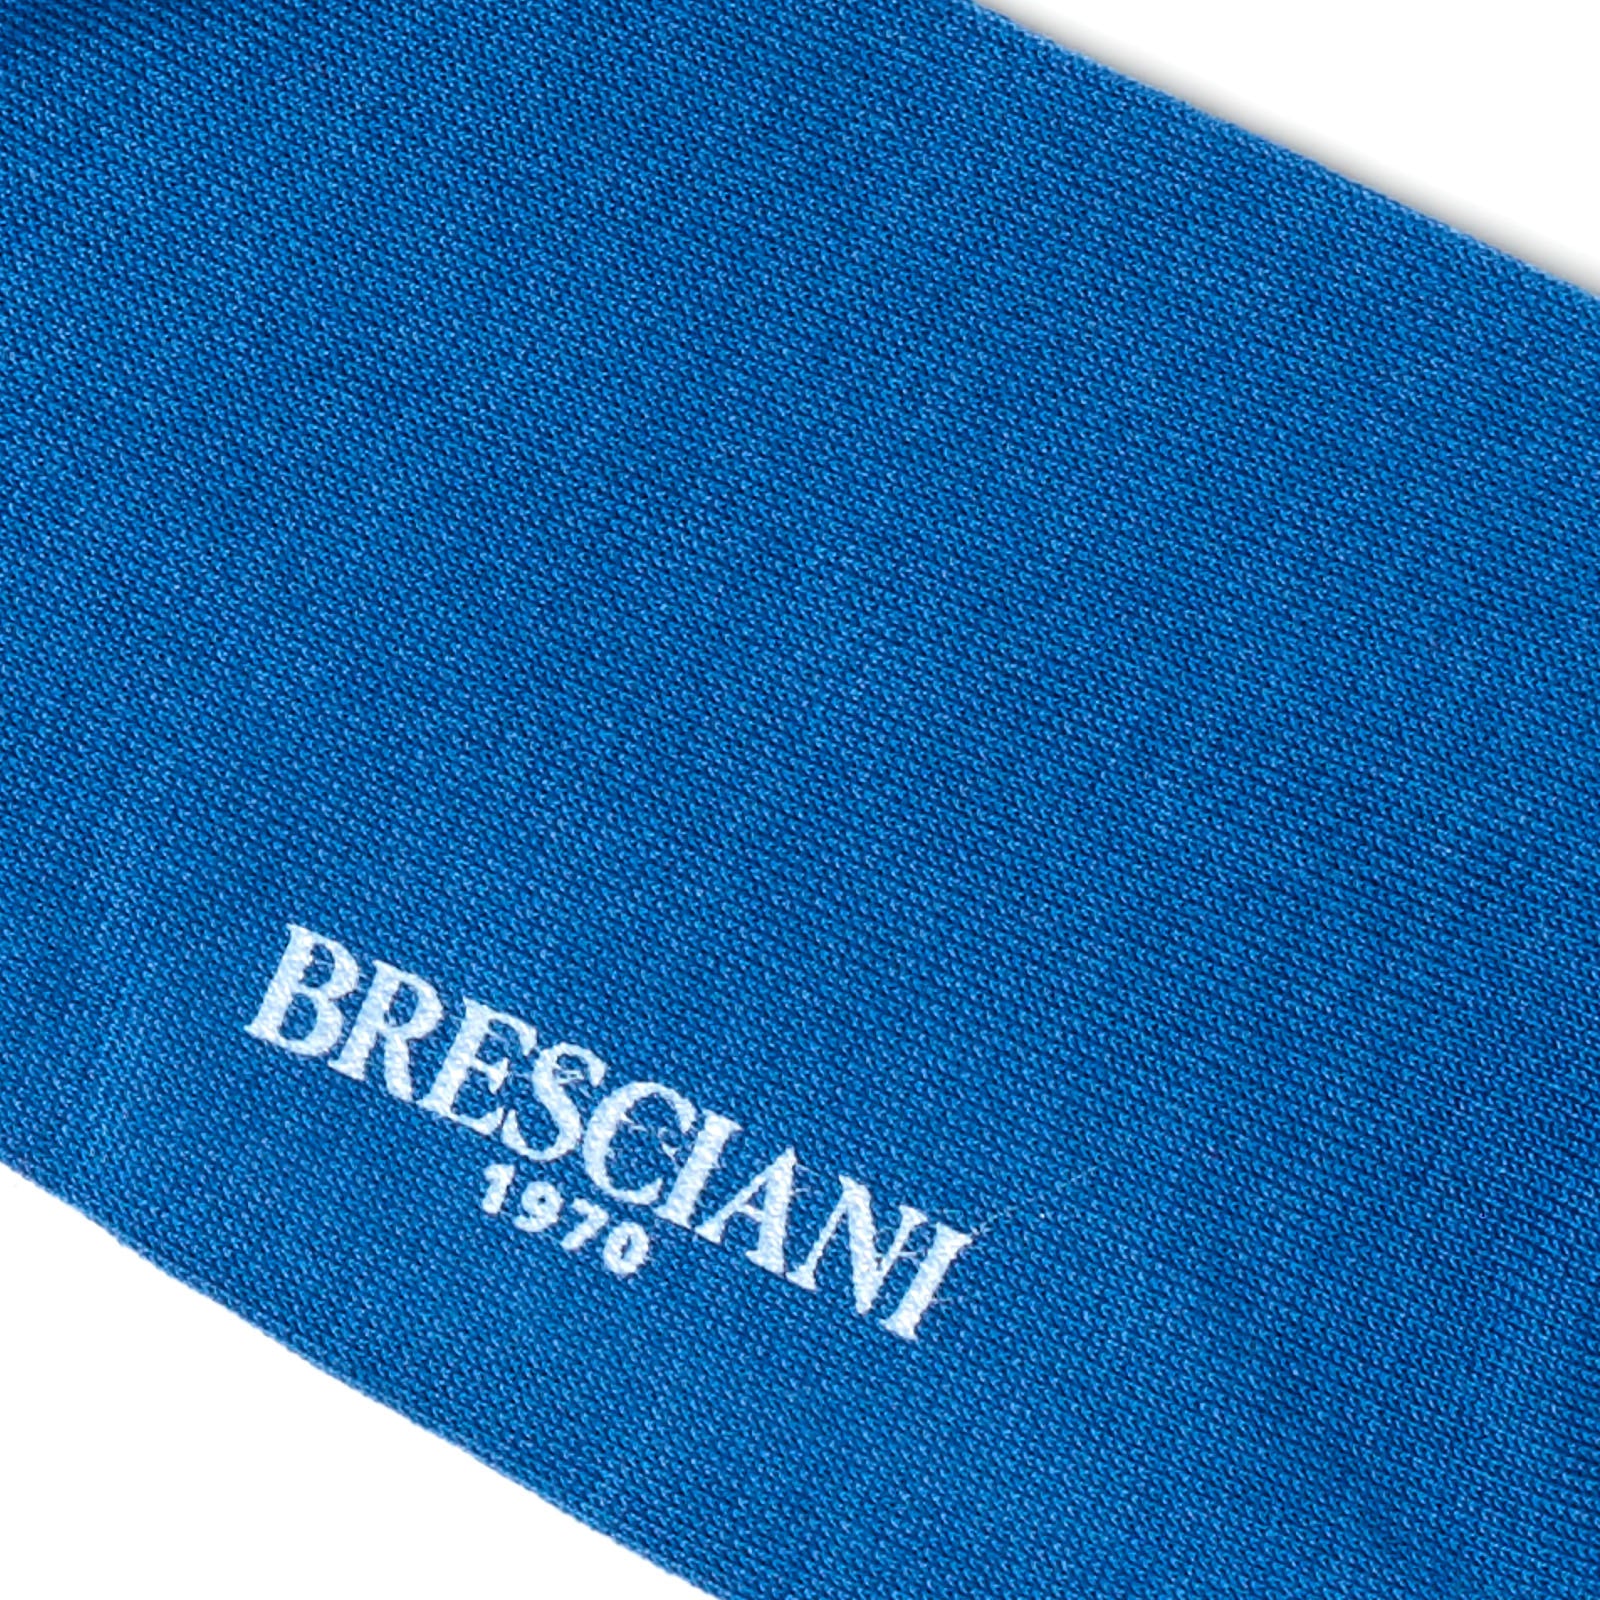 BRESCIANI Cotton Small Pattern Design Mid Calf Length Socks US M BRESCIANI